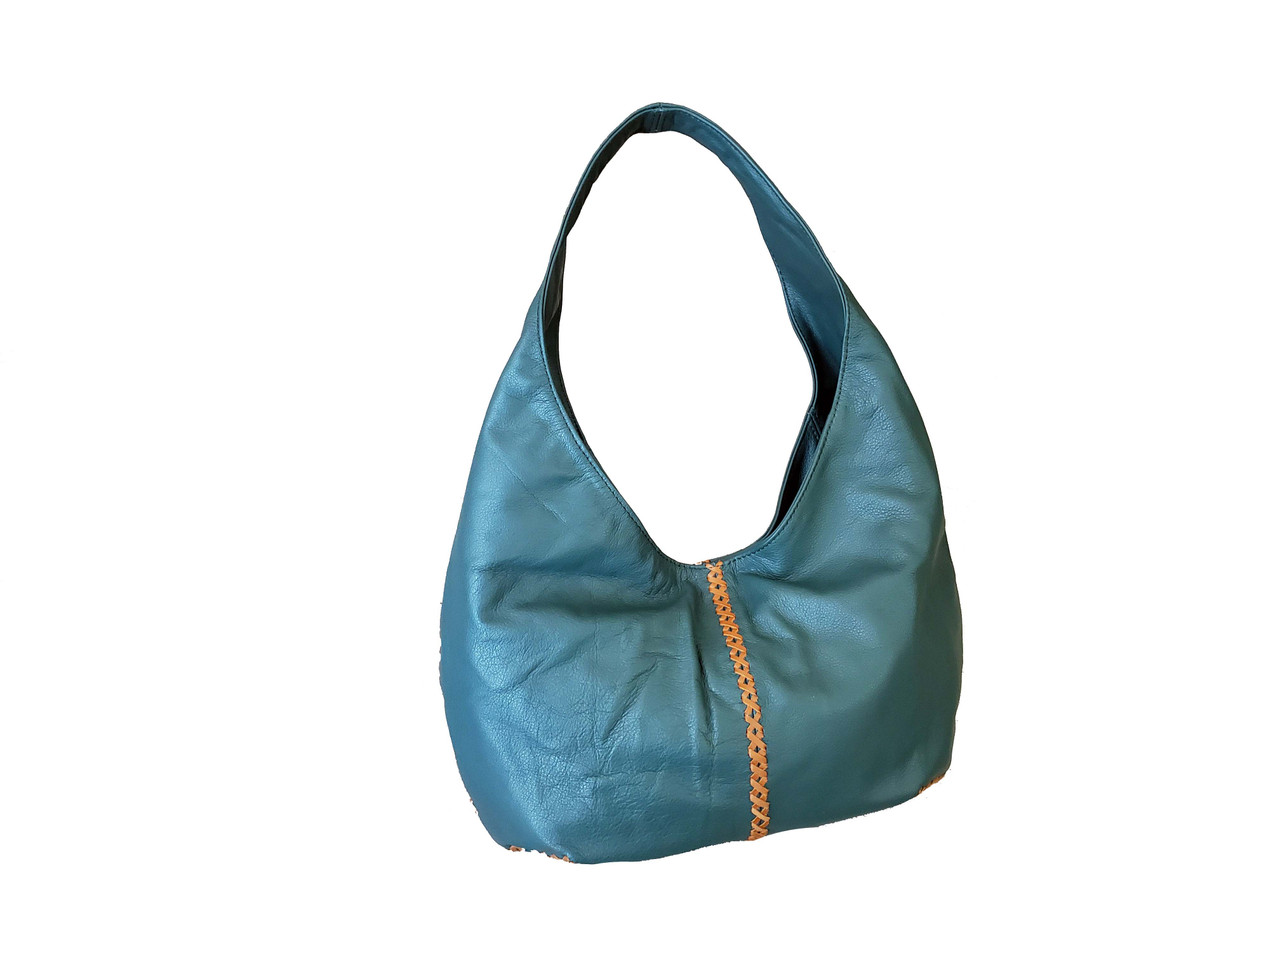 Designer Hobo Shoulder Bags, Slouchy Hobo Bags